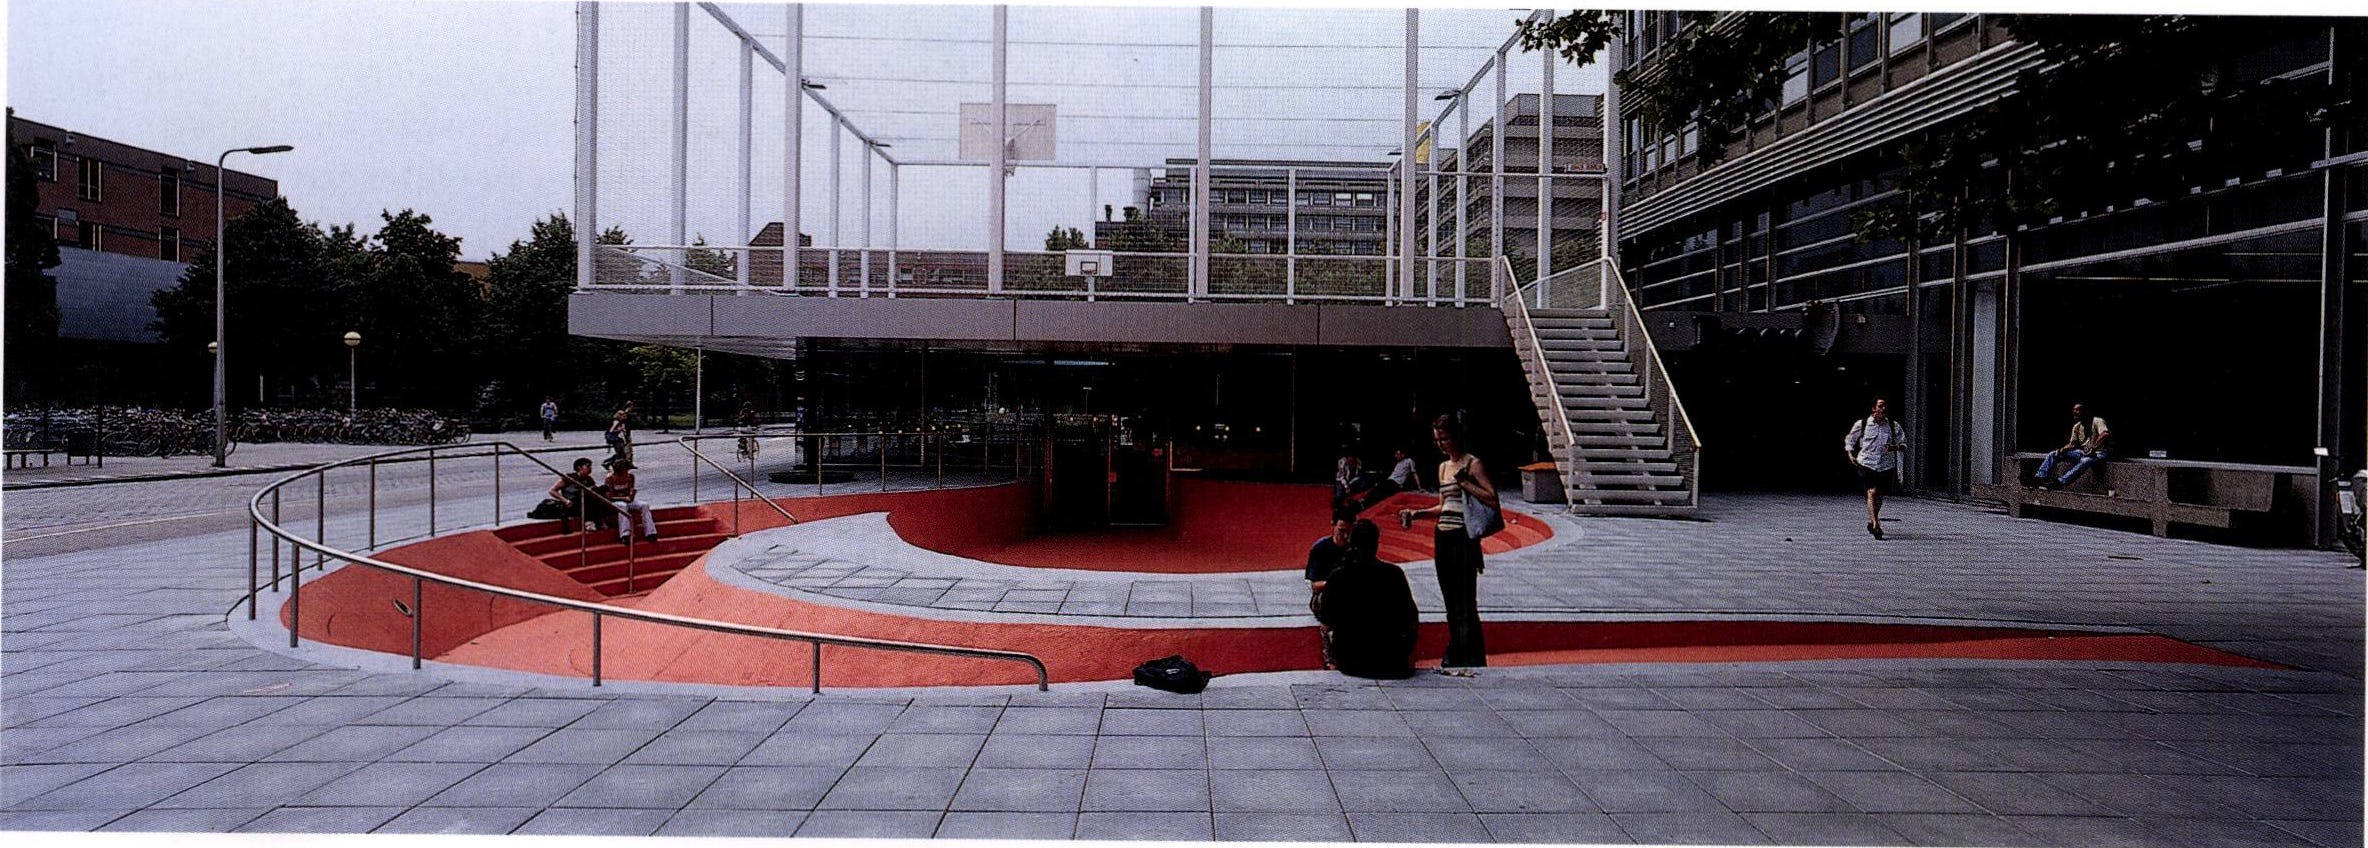 In de toegang tot het café zijn een helder oranje amfitheater, een skatebaan en een hangplek met elkaar verenigd - Beeld Jeroen Musch